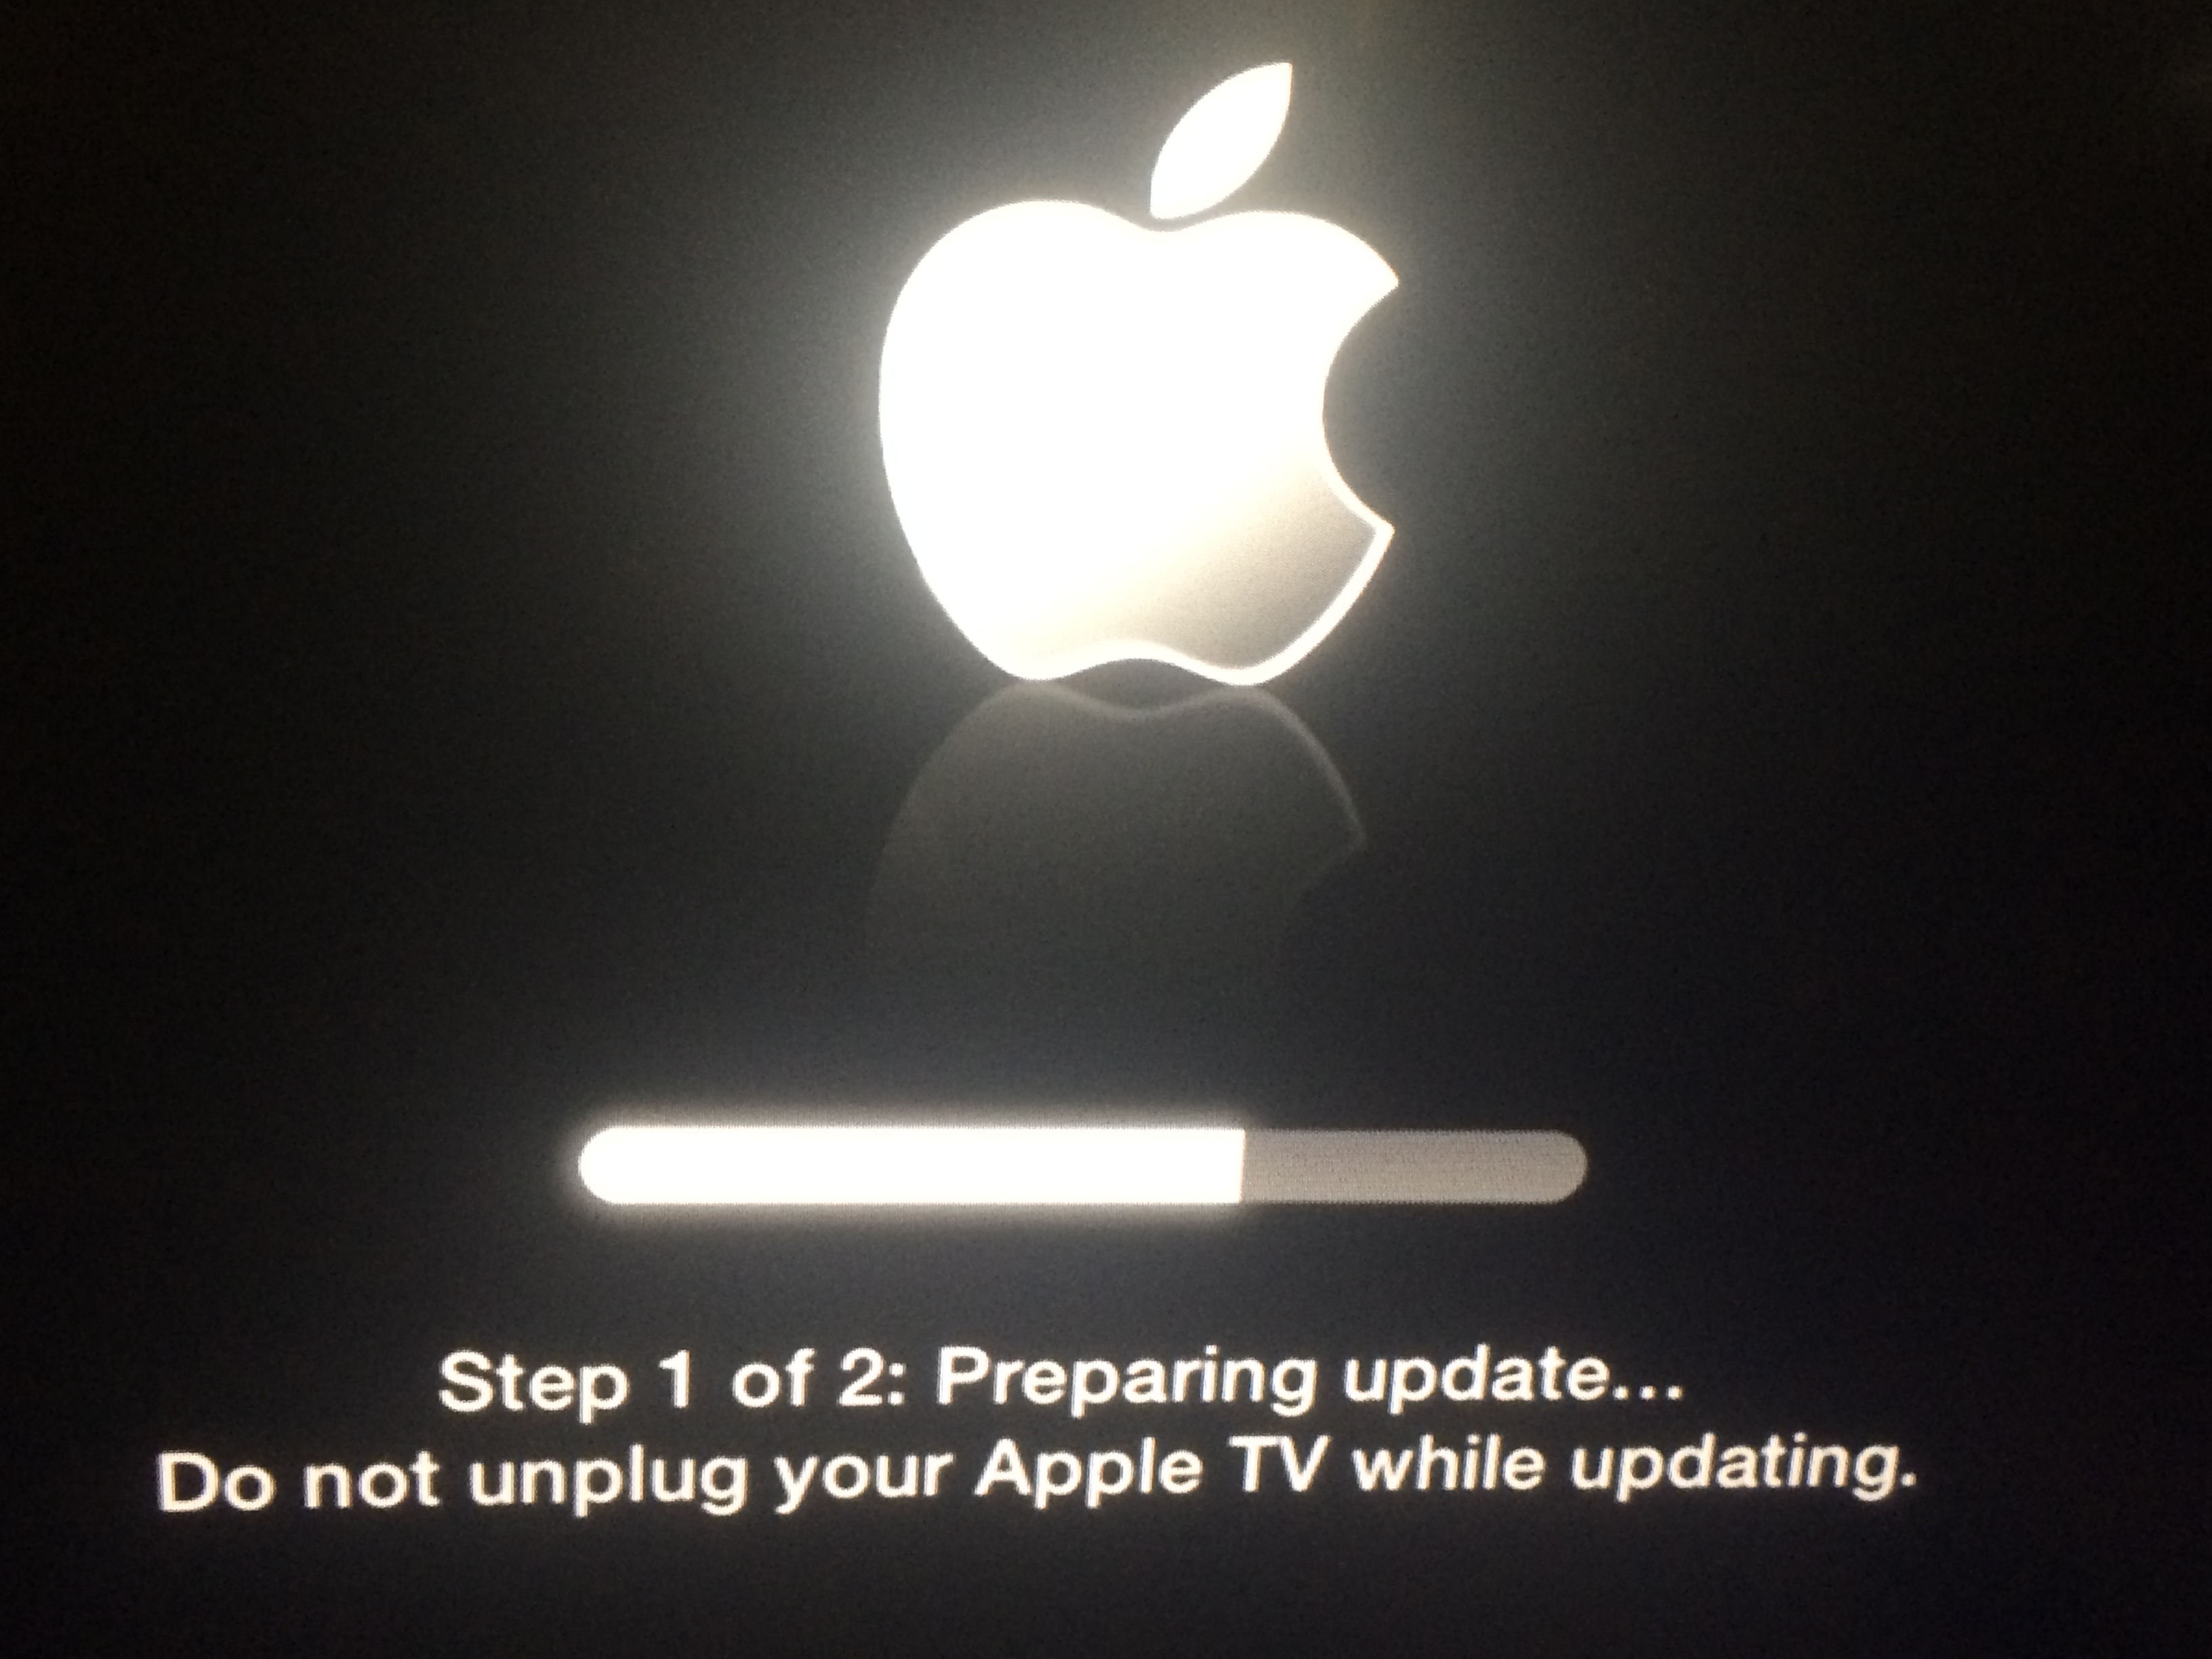 apple tv update